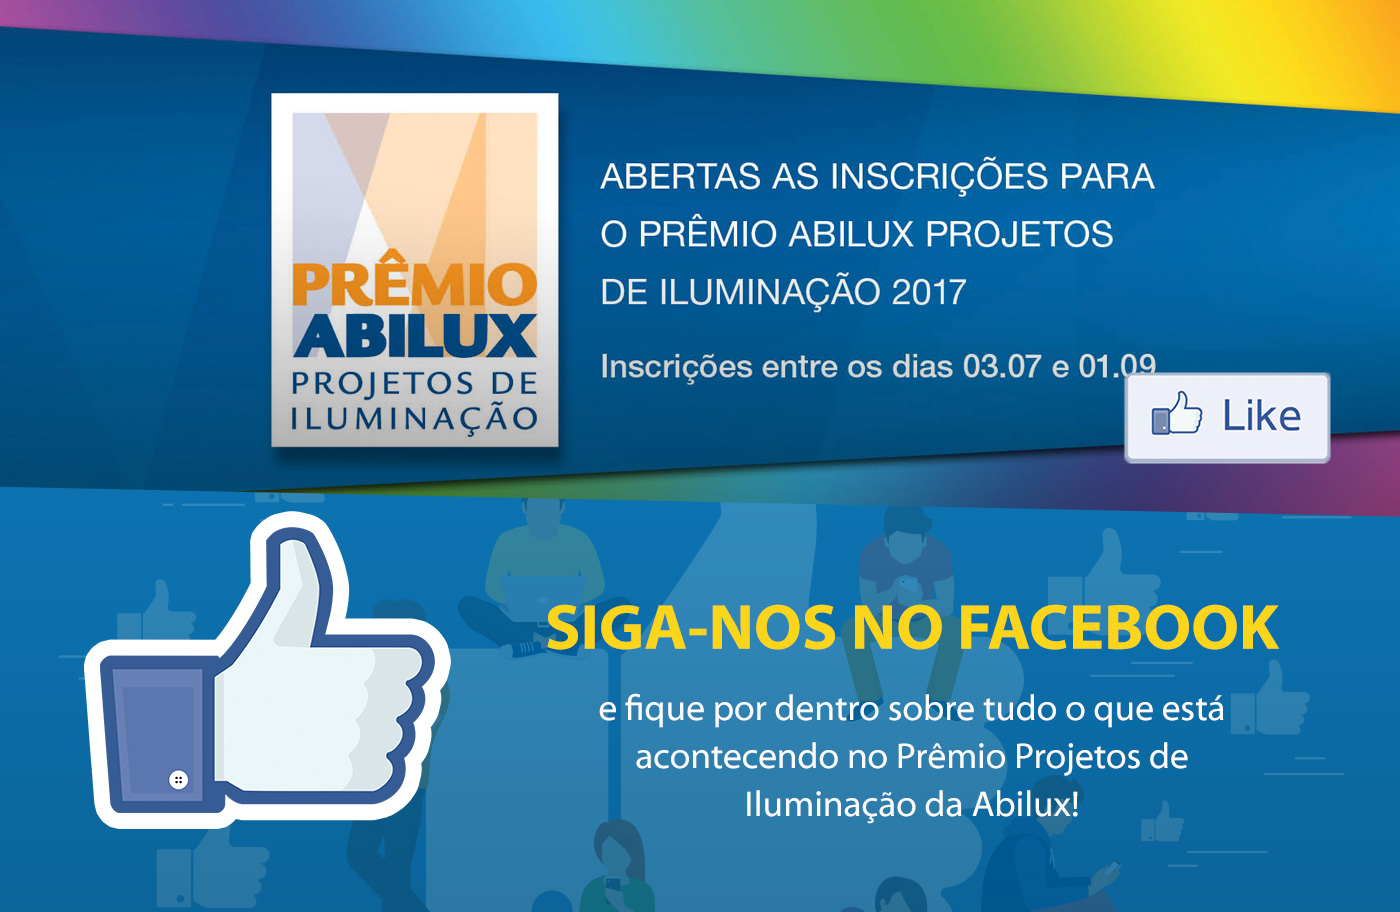 Siga-nos no Facebook e fique por dentro sobre tudo o que está acontecendo no Prêmio Projetos de Iluminação da Abilux: https://www.facebook.com/premioabilux/